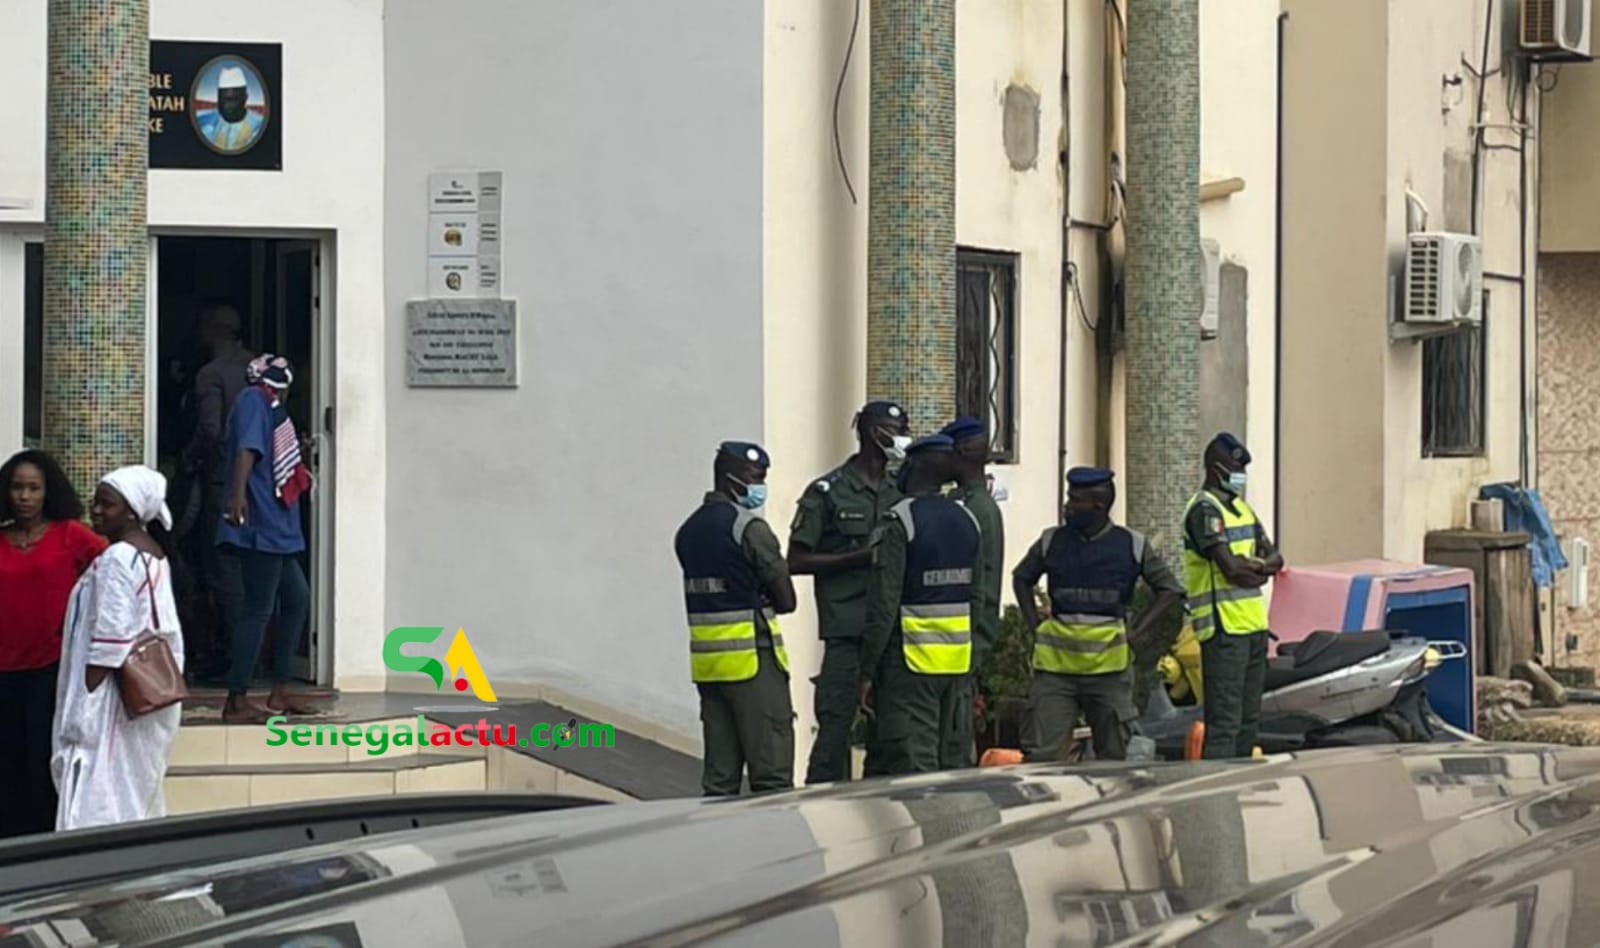 Les révélations explosives des travailleurs de Dmédia : « liifi ñow tay si ay gendarmes… »